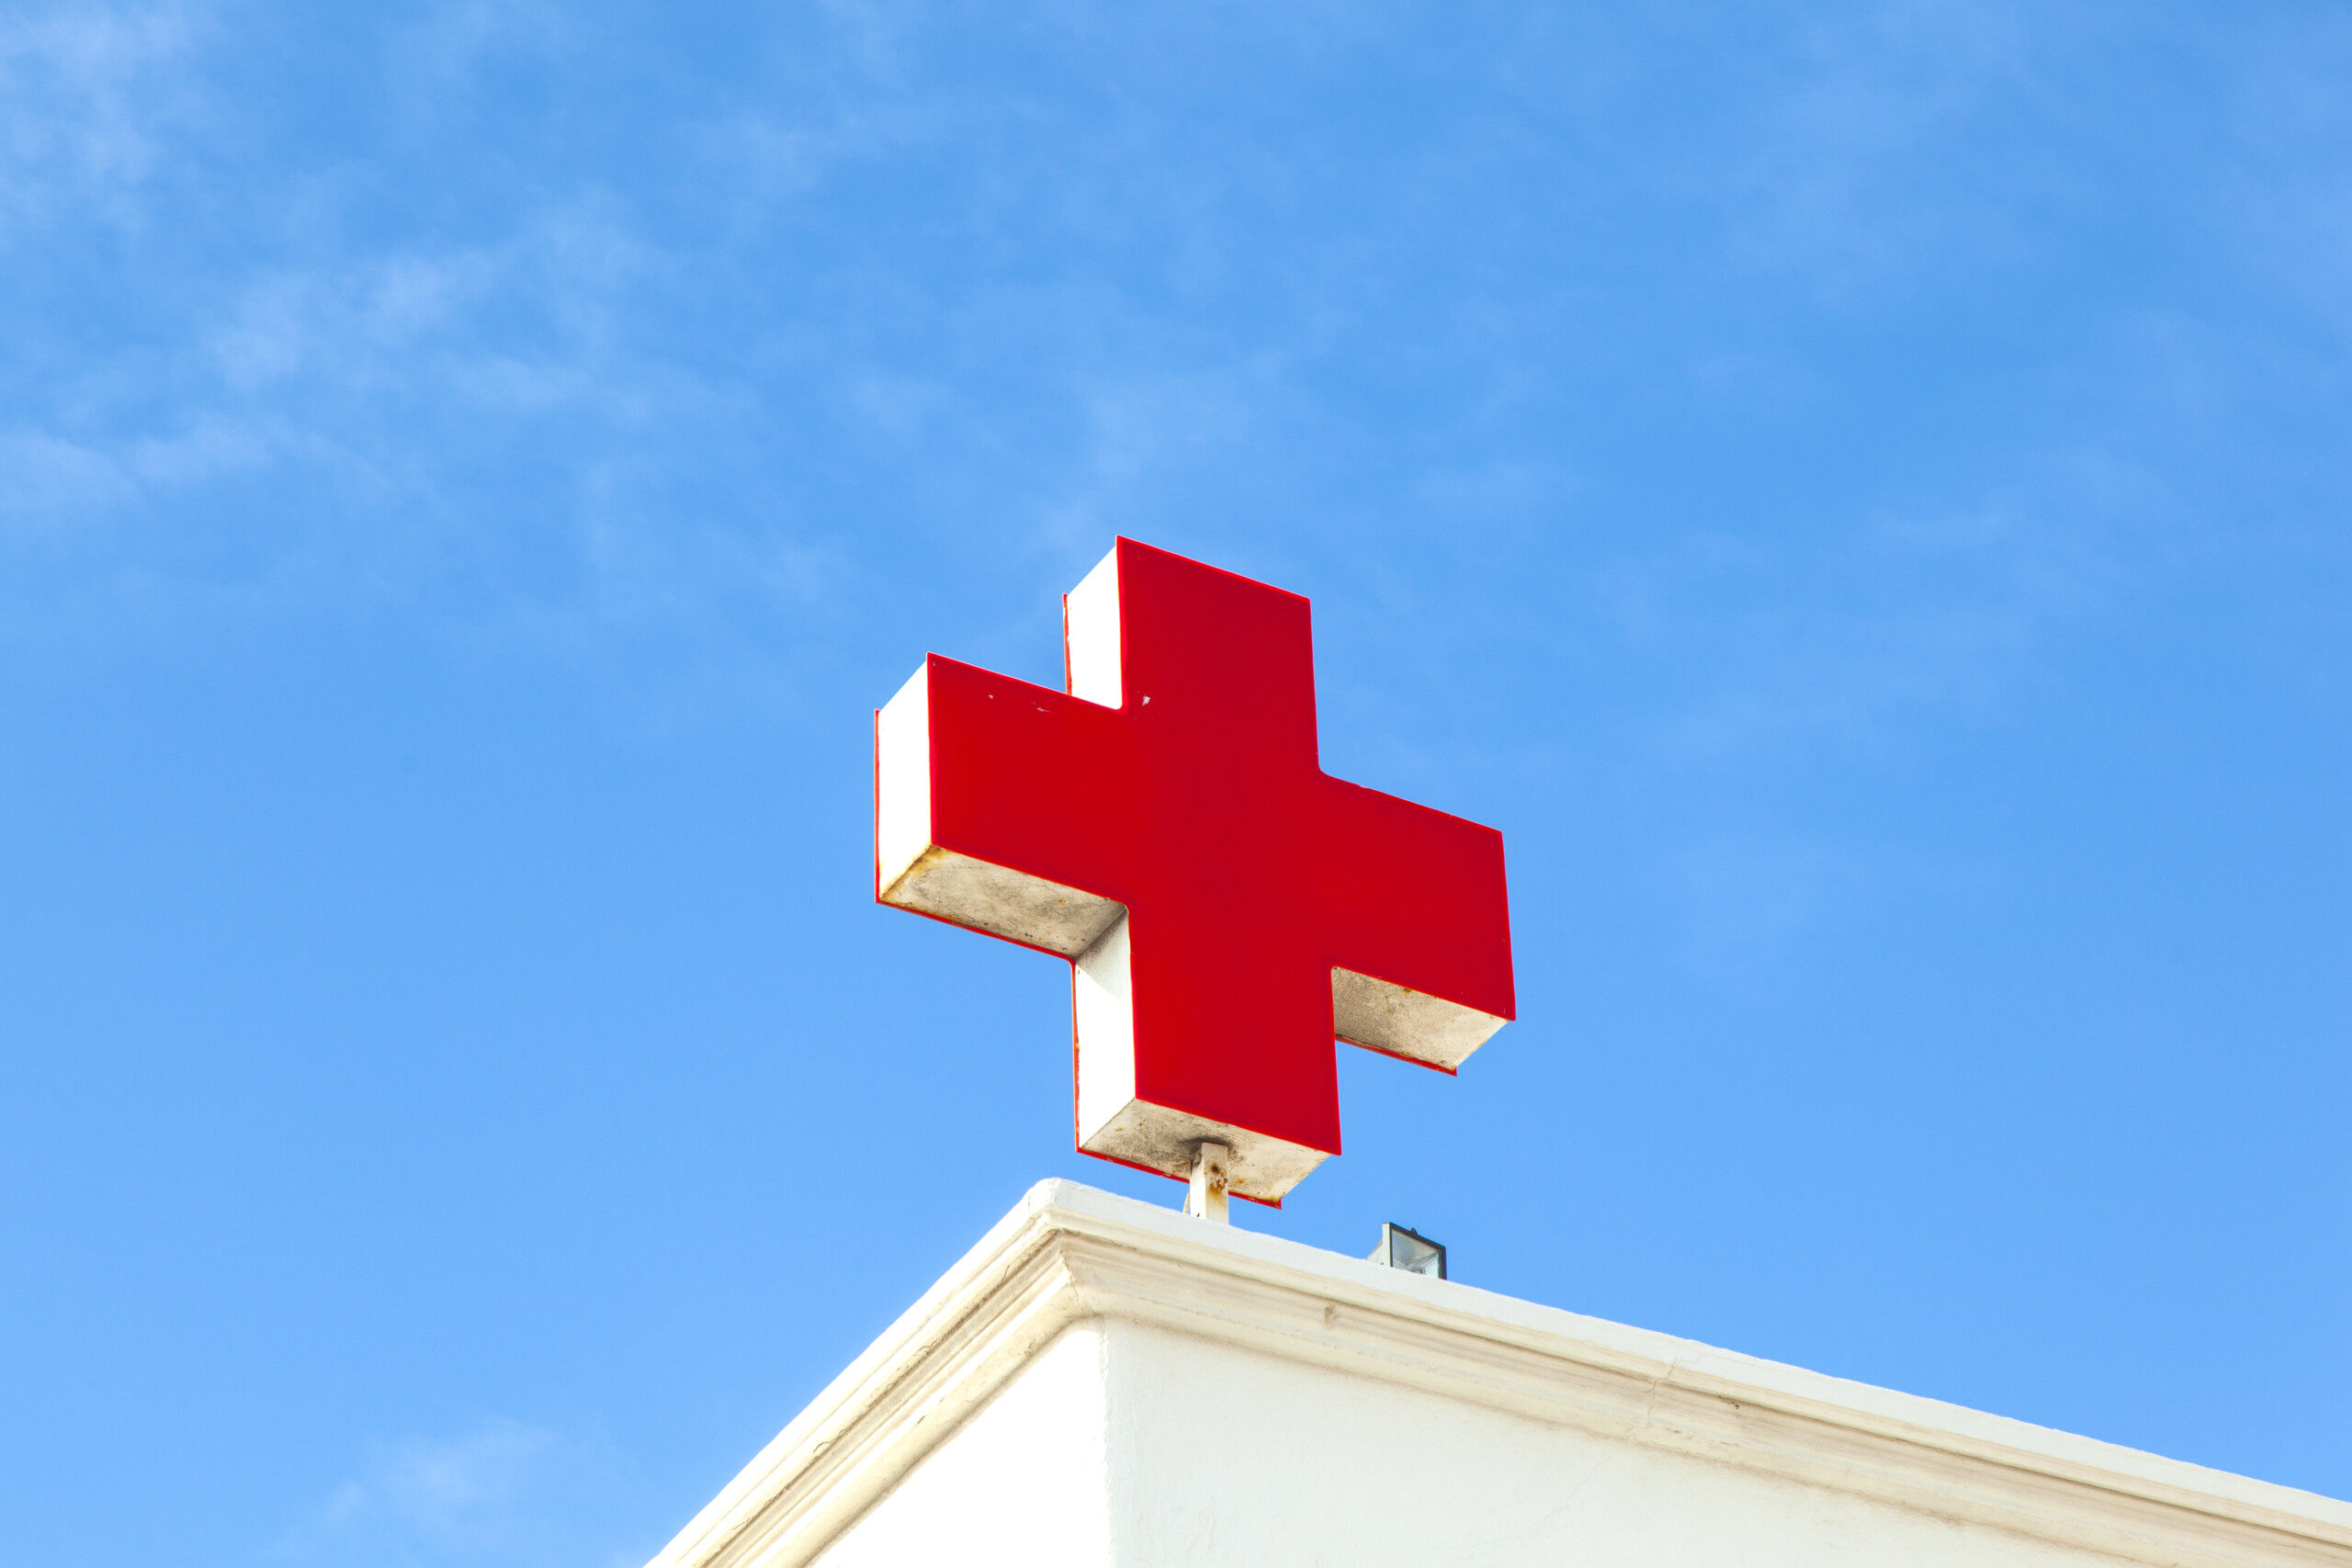 Czerwony krzyż na dachu szpitala symbolizujący pomoc medyczną. Playa Blanca, Hiszpania.